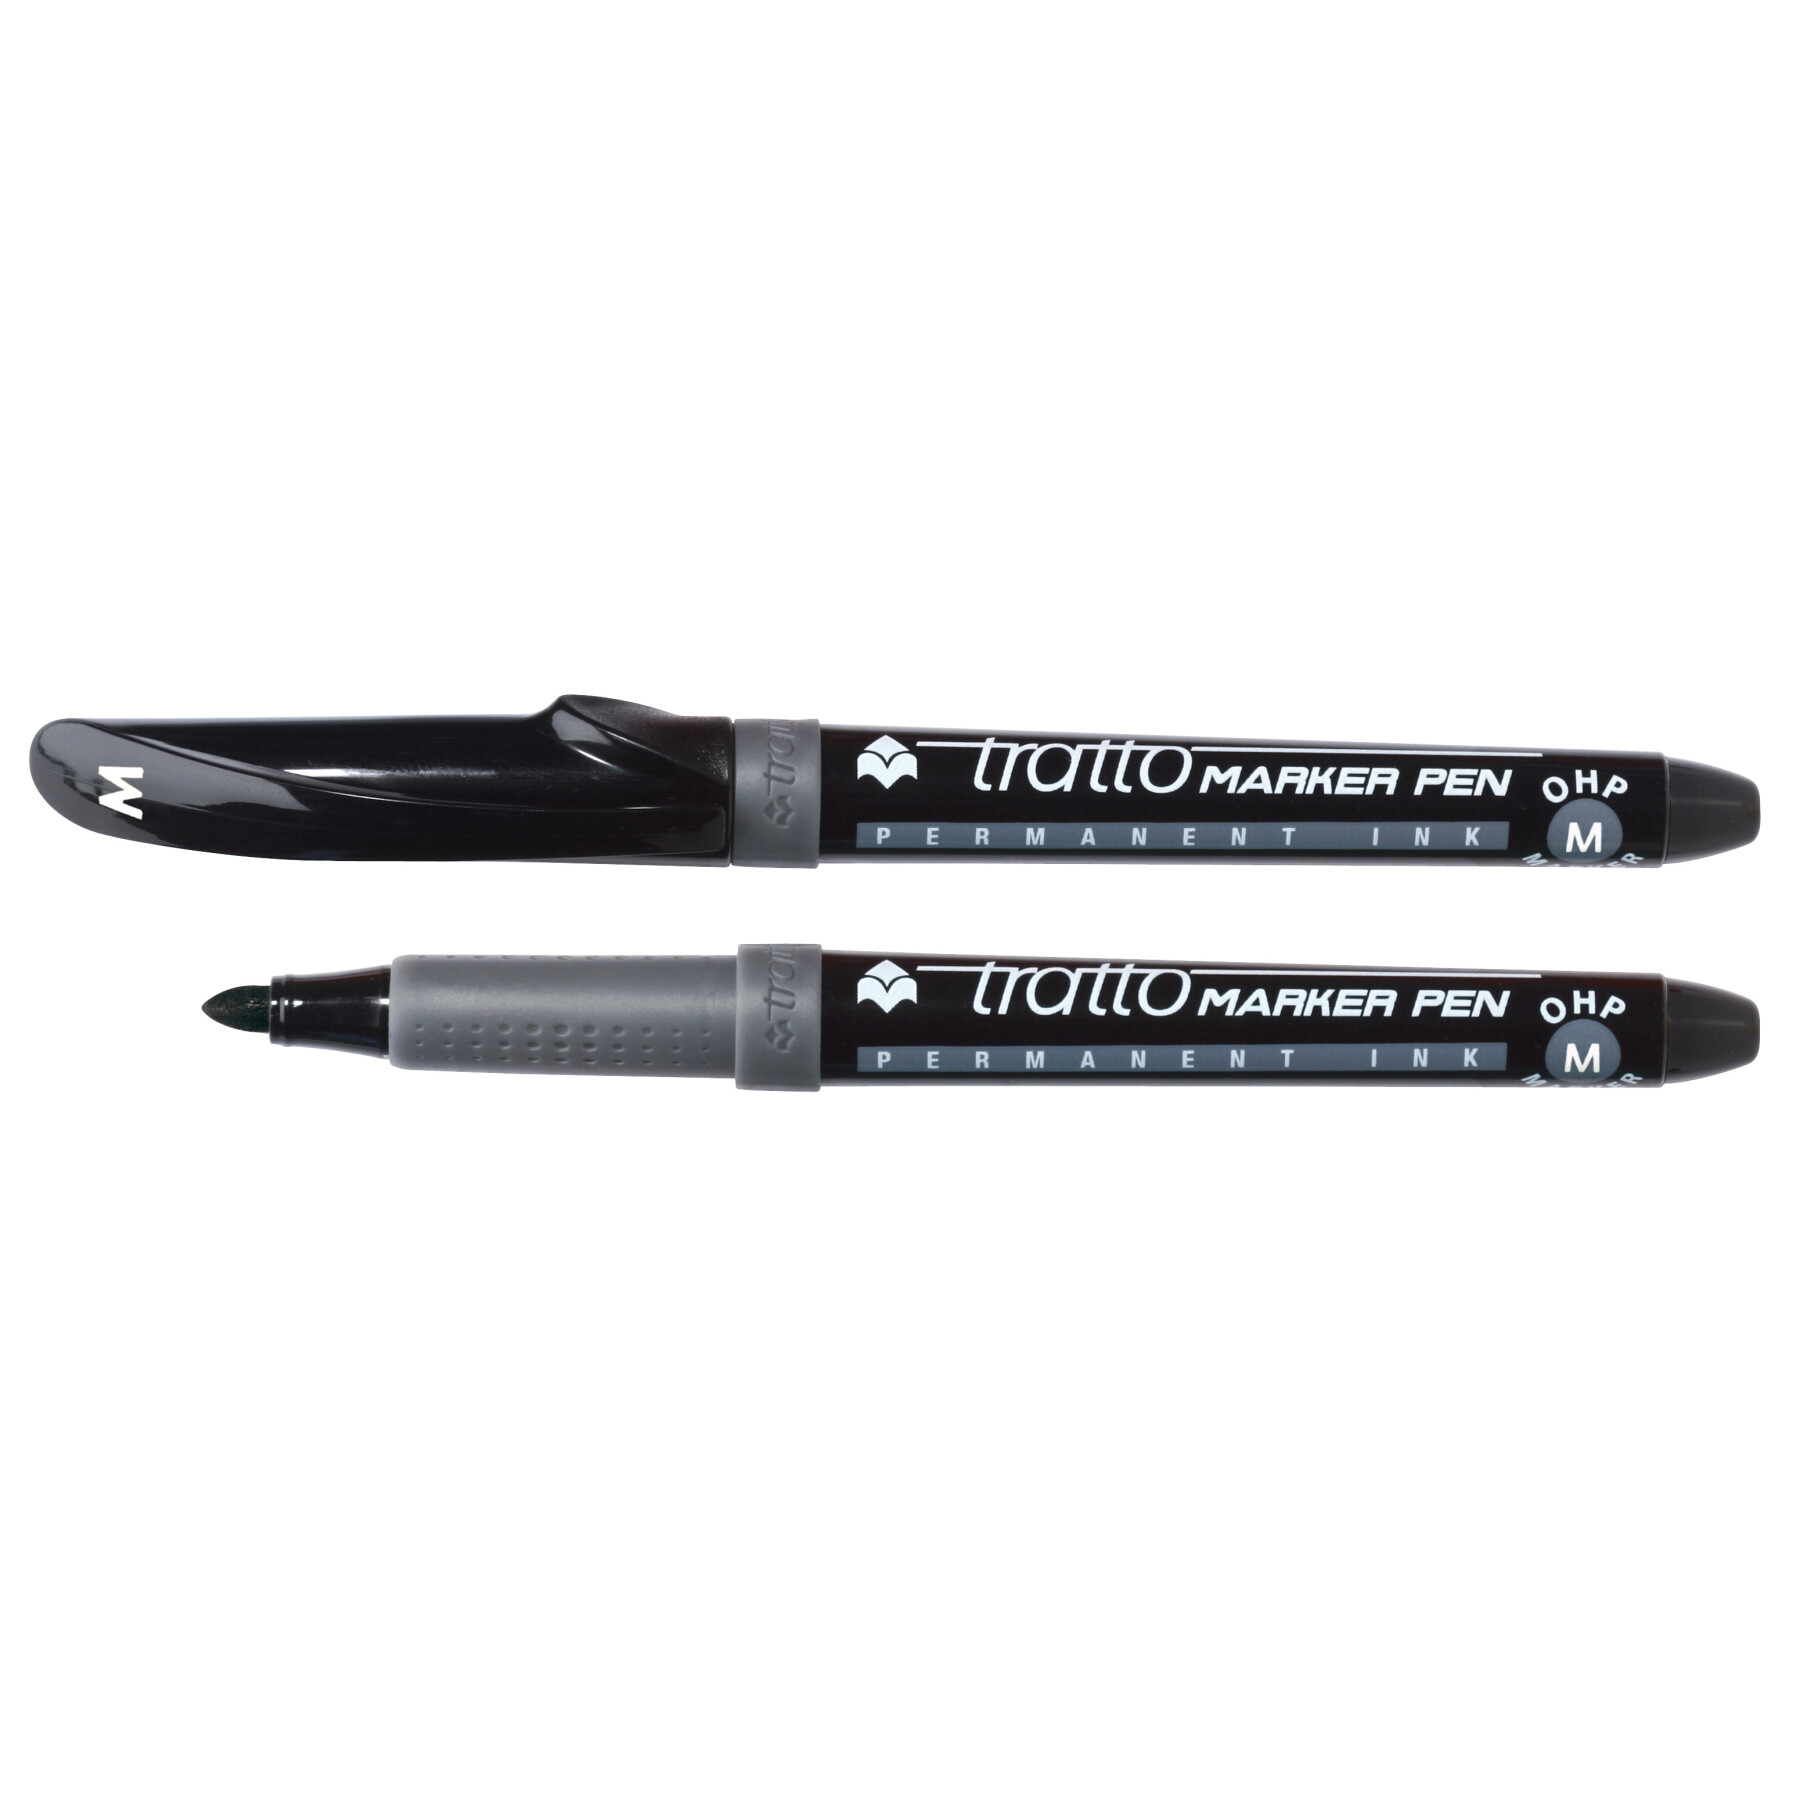 Tratto marker pen ohp - marcatore permanente confezione 2 pz - nero - 